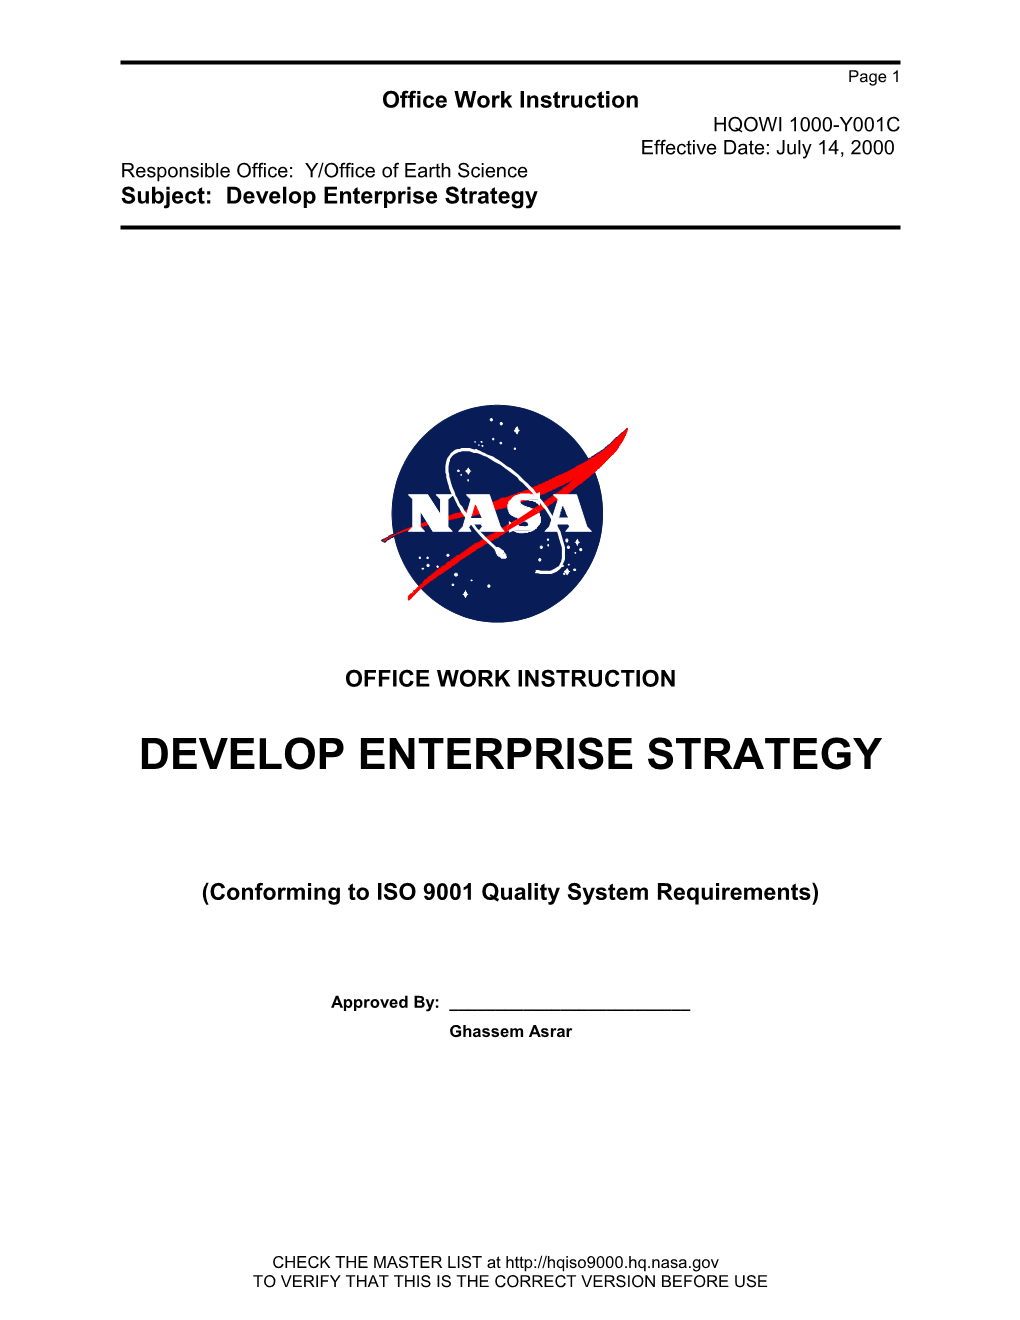 Develop Enterprise Strategy